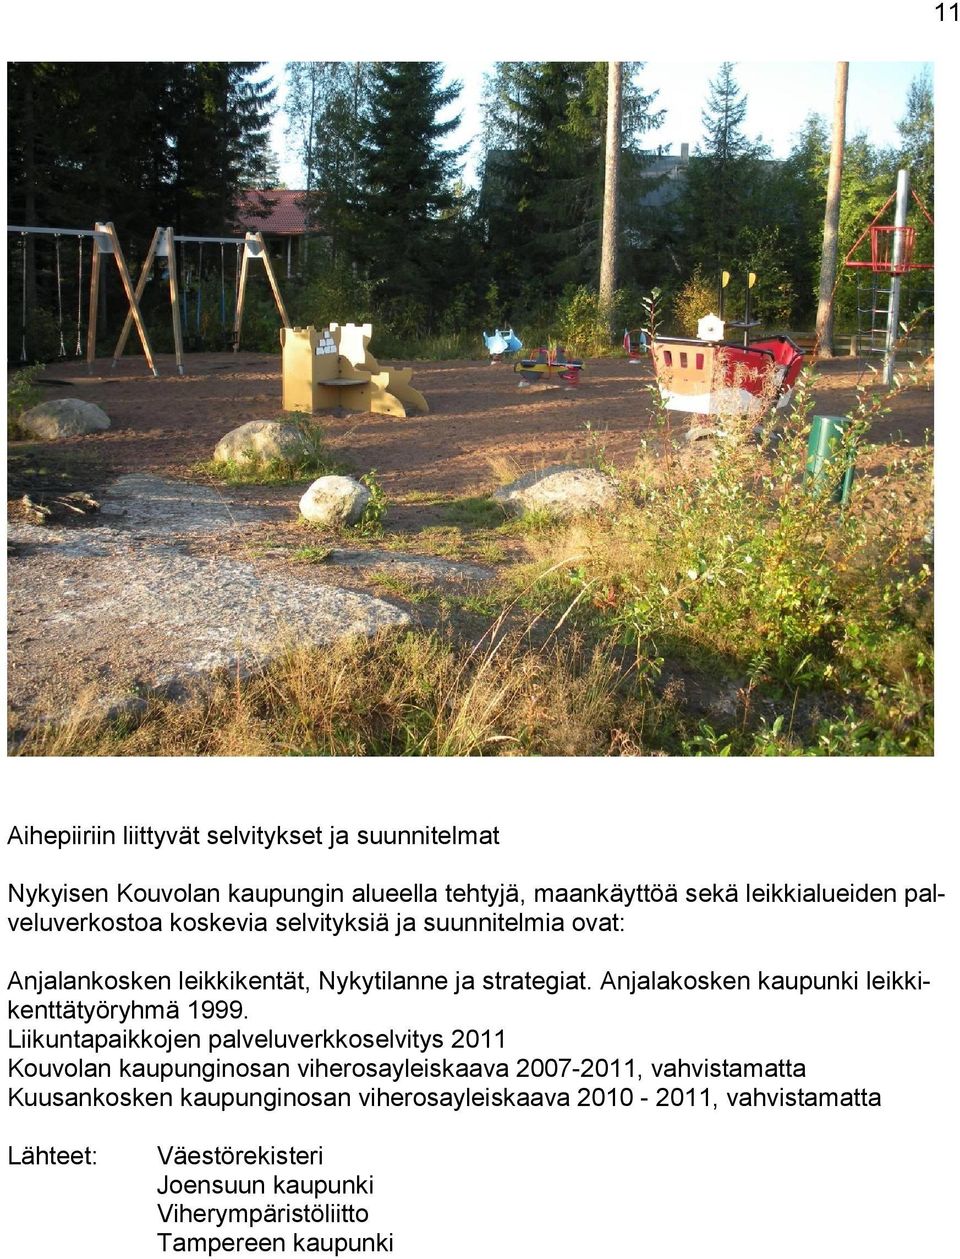 Anjalakosken kaupunki leikkikenttätyöryhmä 1999.